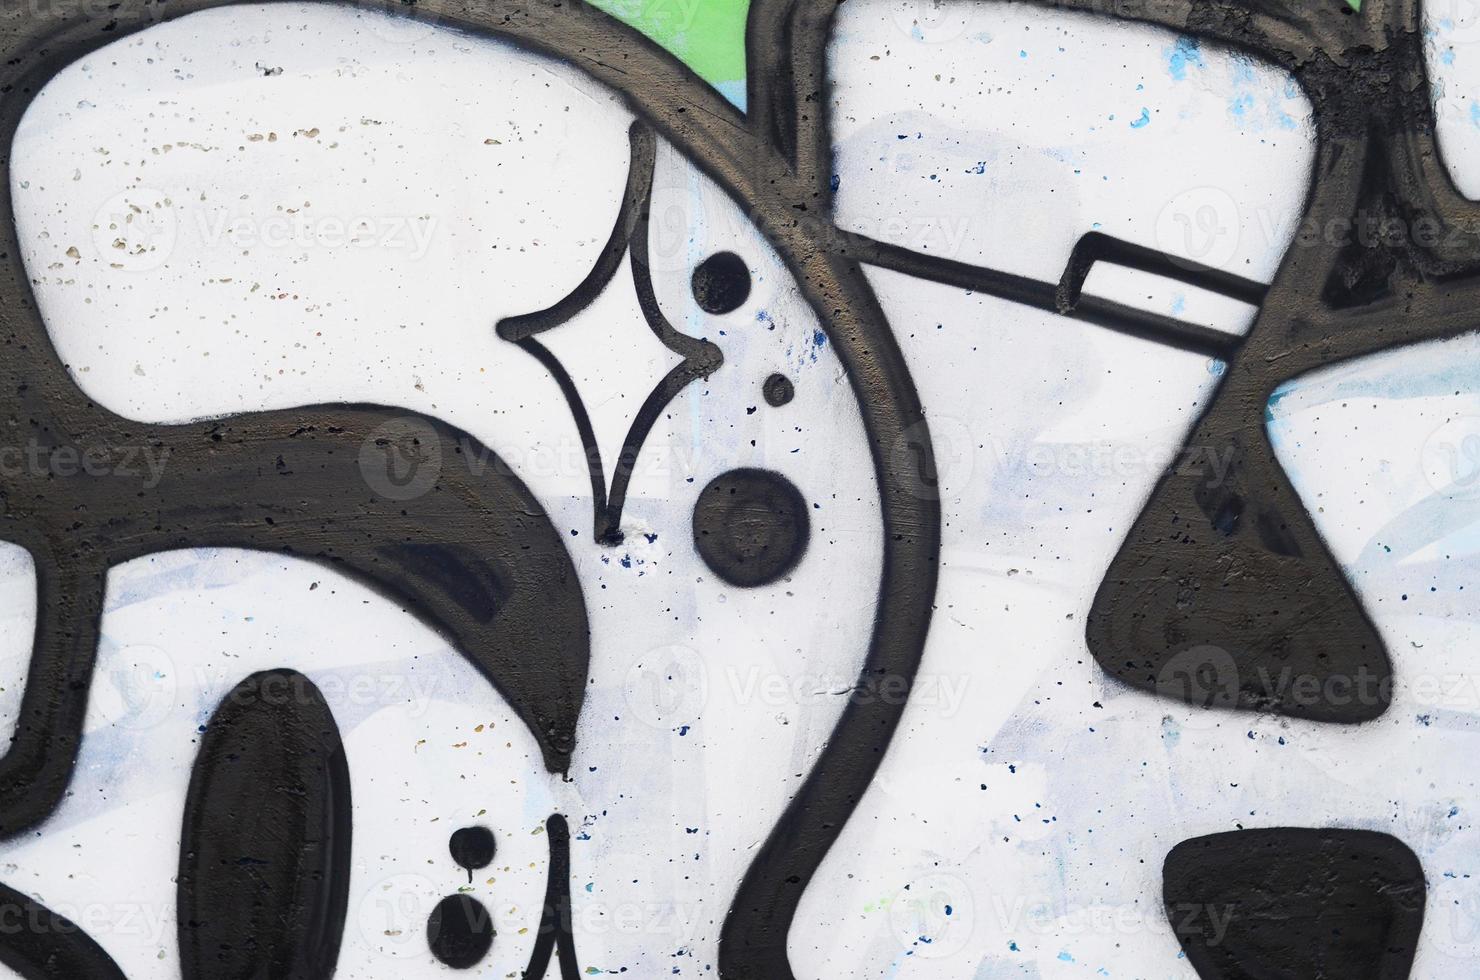 imagen de fondo de un muro de hormigón con un patrón de graffiti abstracto. arte callejero, vandalismo y aficiones juveniles foto